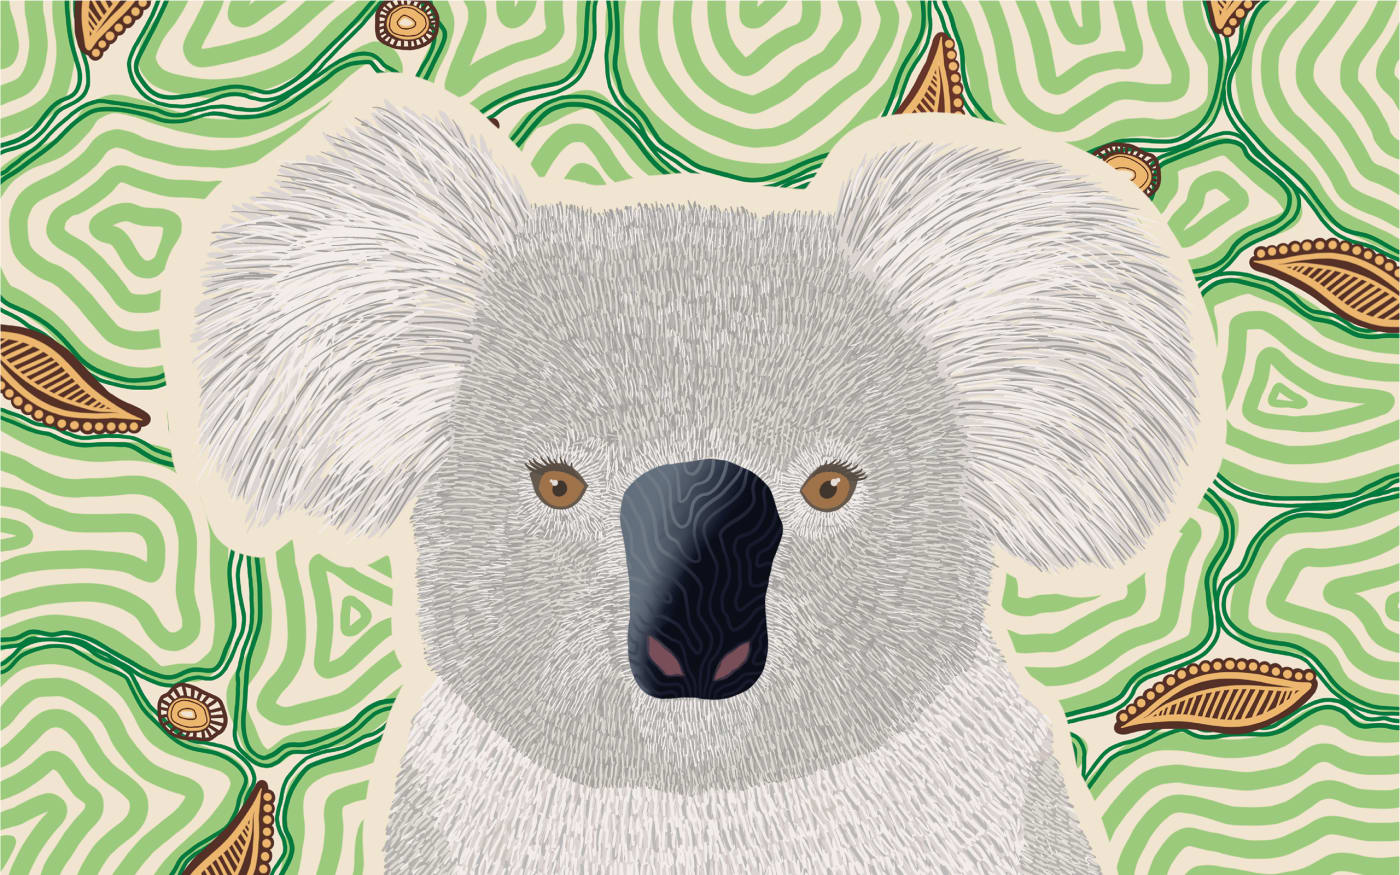 Indigenous koala art from Wiradjuri and Gundungurra Yinaa artist Sarah Levett.